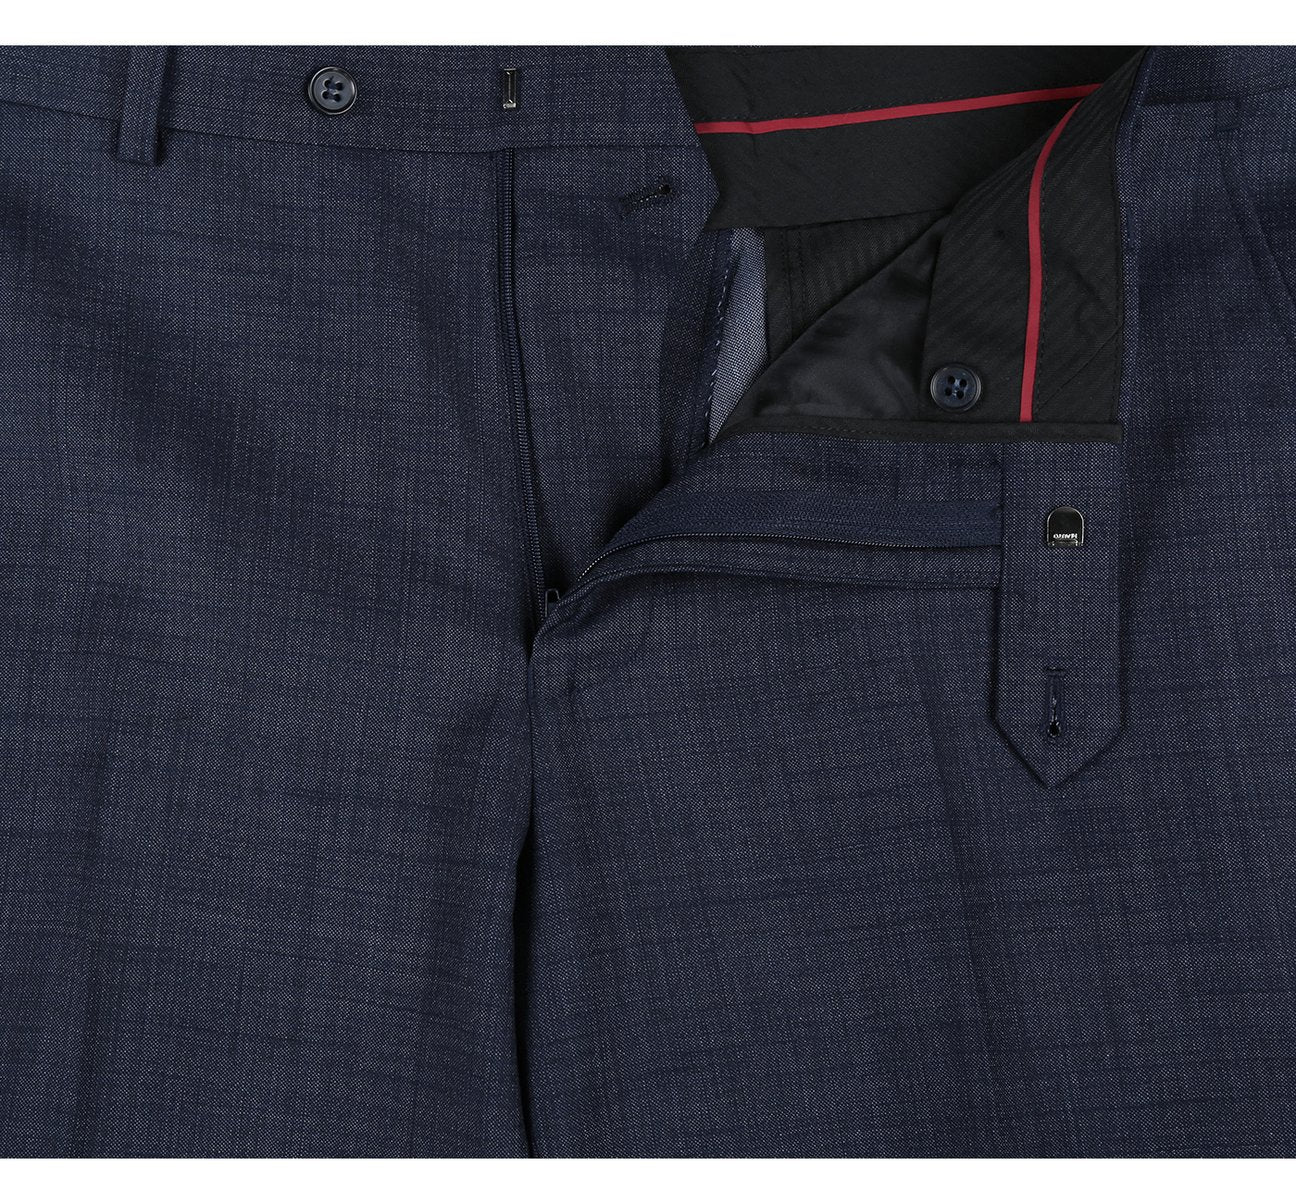 RENOIR Two Piece Classic Fit Wool Blend Suit 558-3